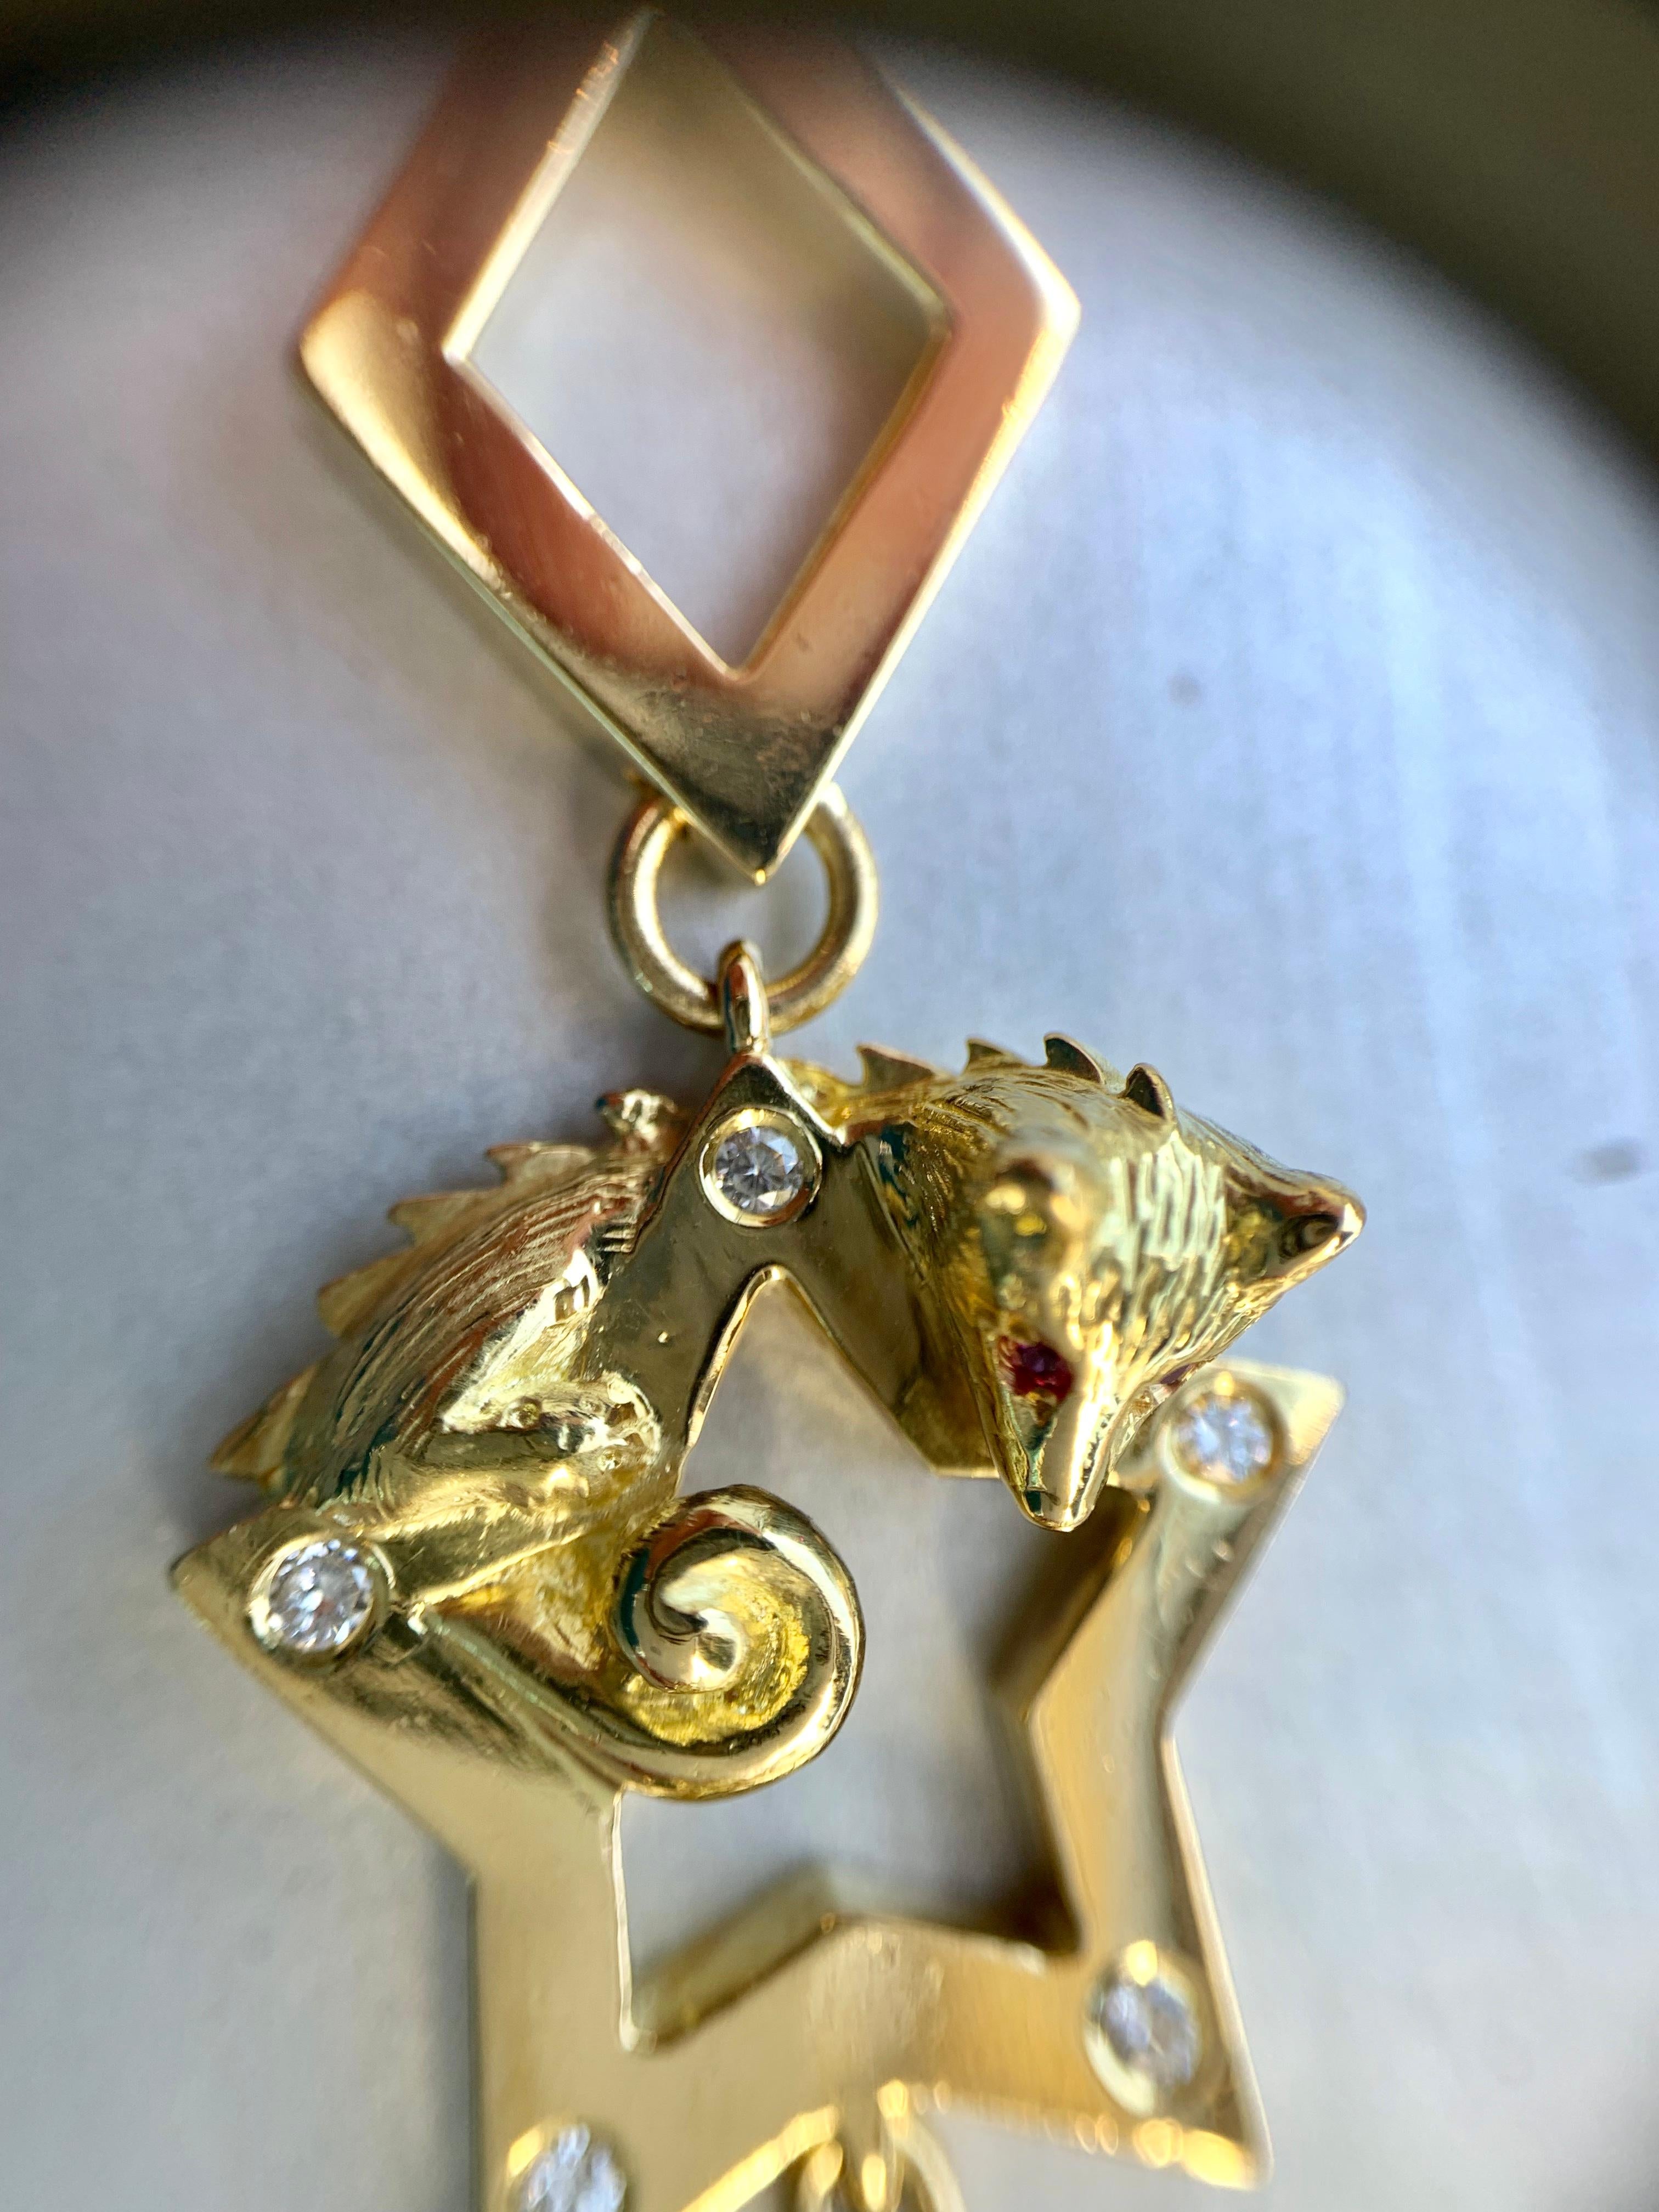 18 Karat Charles Turi Animal Star Necklace with Diamonds and Gemstones 1